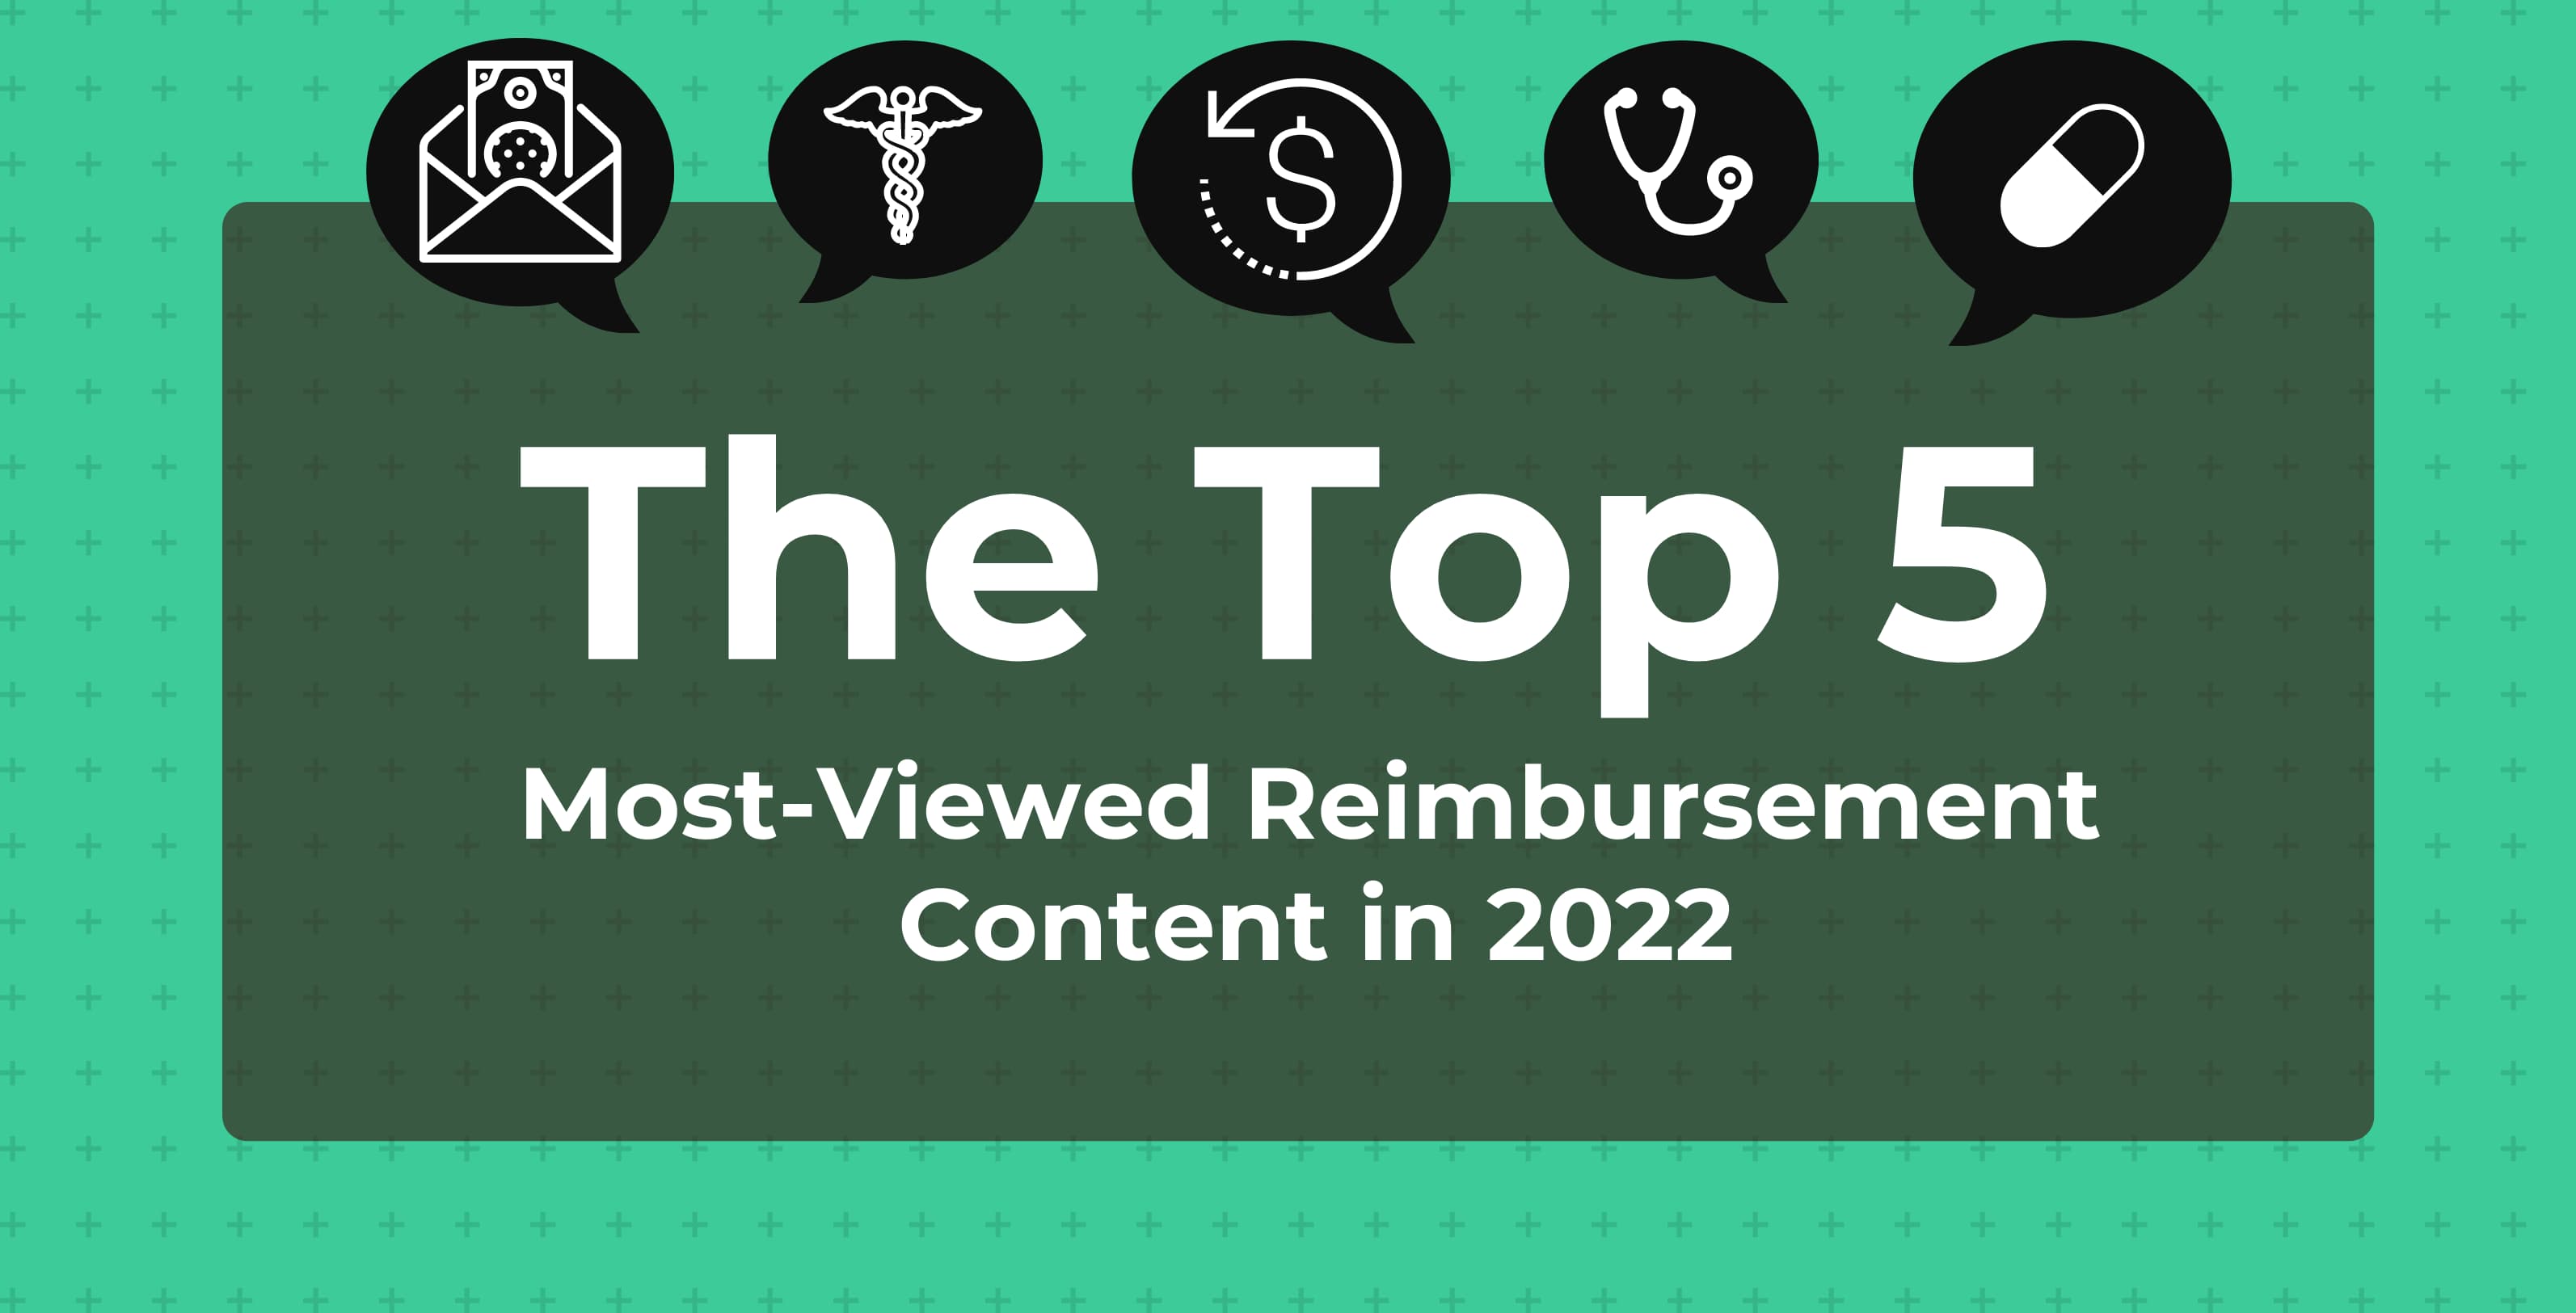 Top 5 Most-Viewed Reimbursement Content in 2022